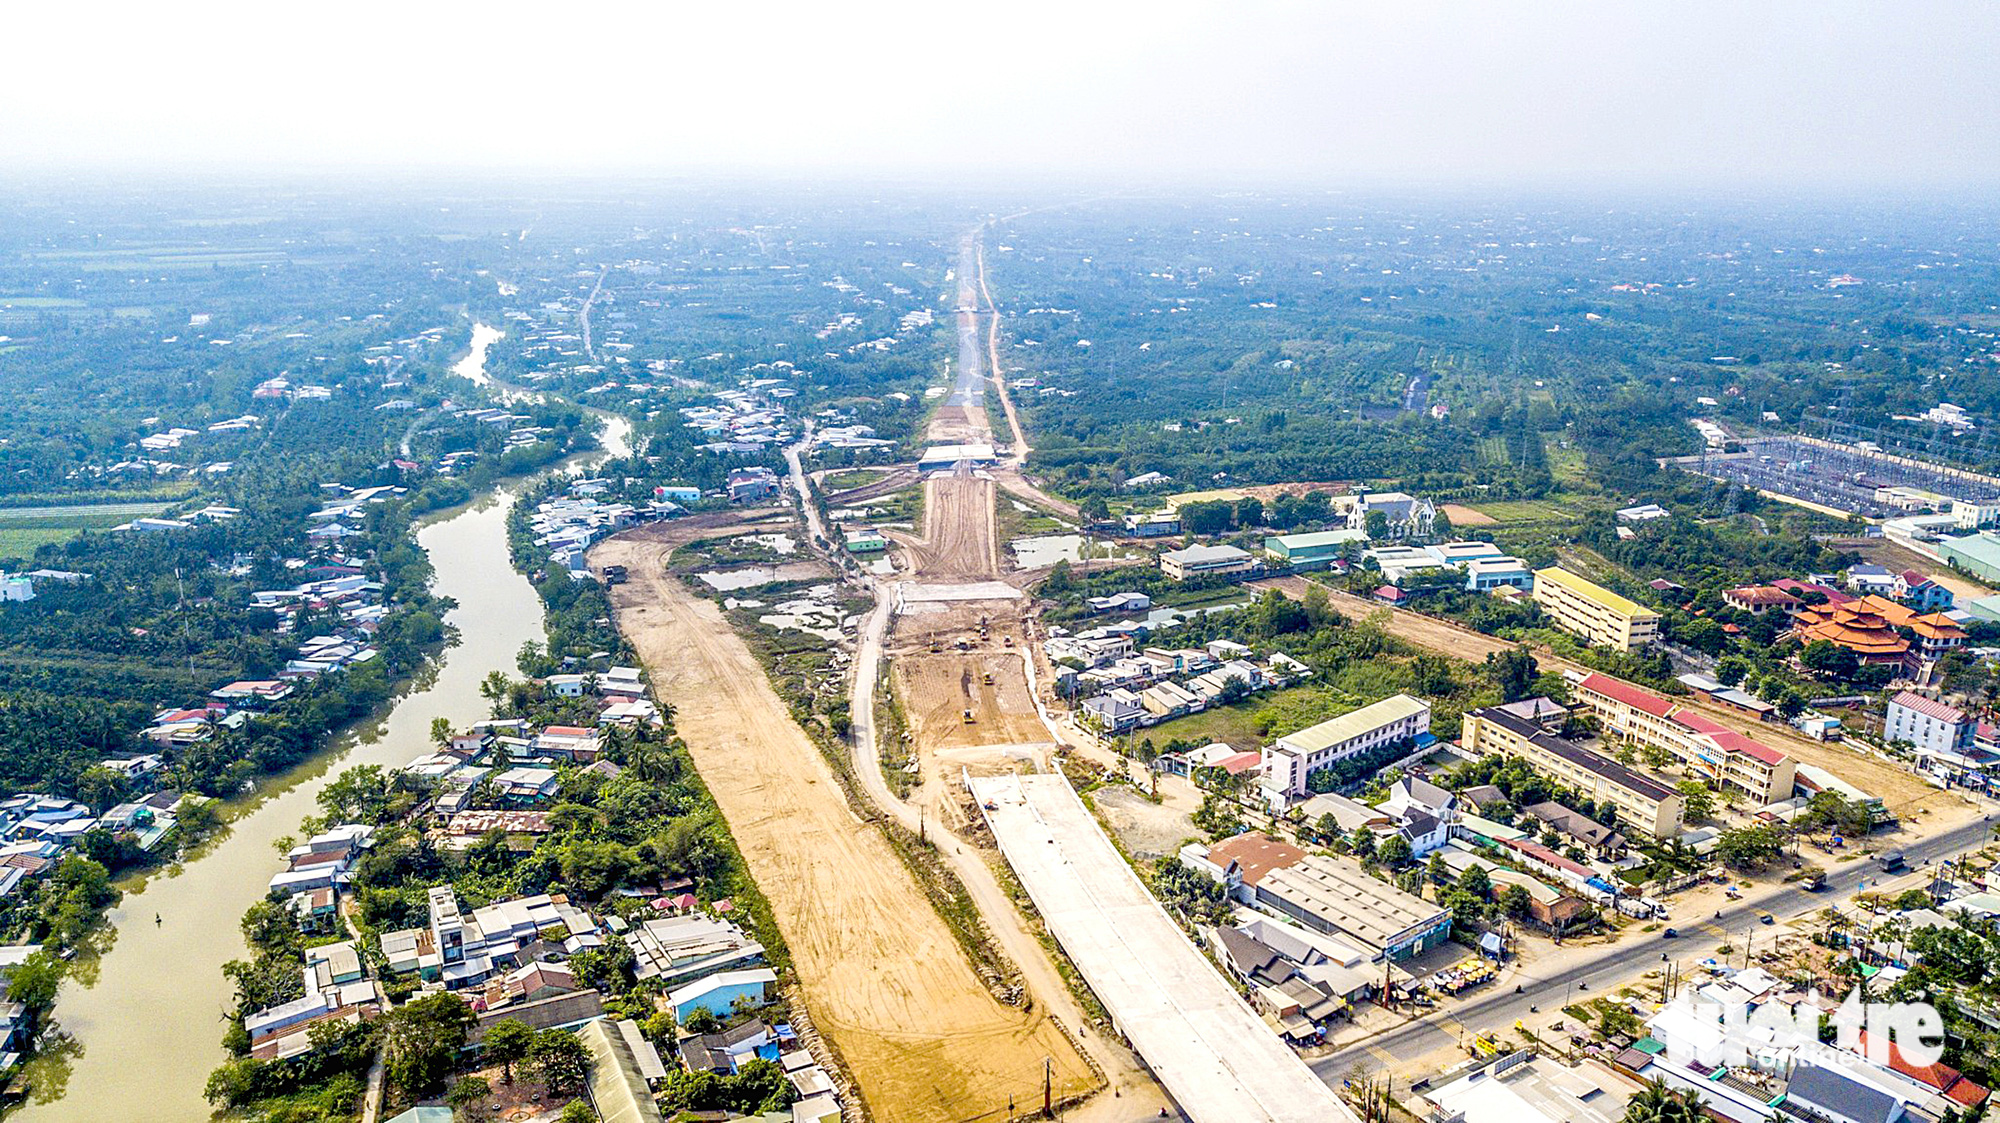 Cao tốc Mỹ Thuận - Cần Thơ đang được gấp rút triển khai, theo kế hoạch dự kiến hoàn thành trong năm 2023 - Ảnh: CHÍ QUỐC